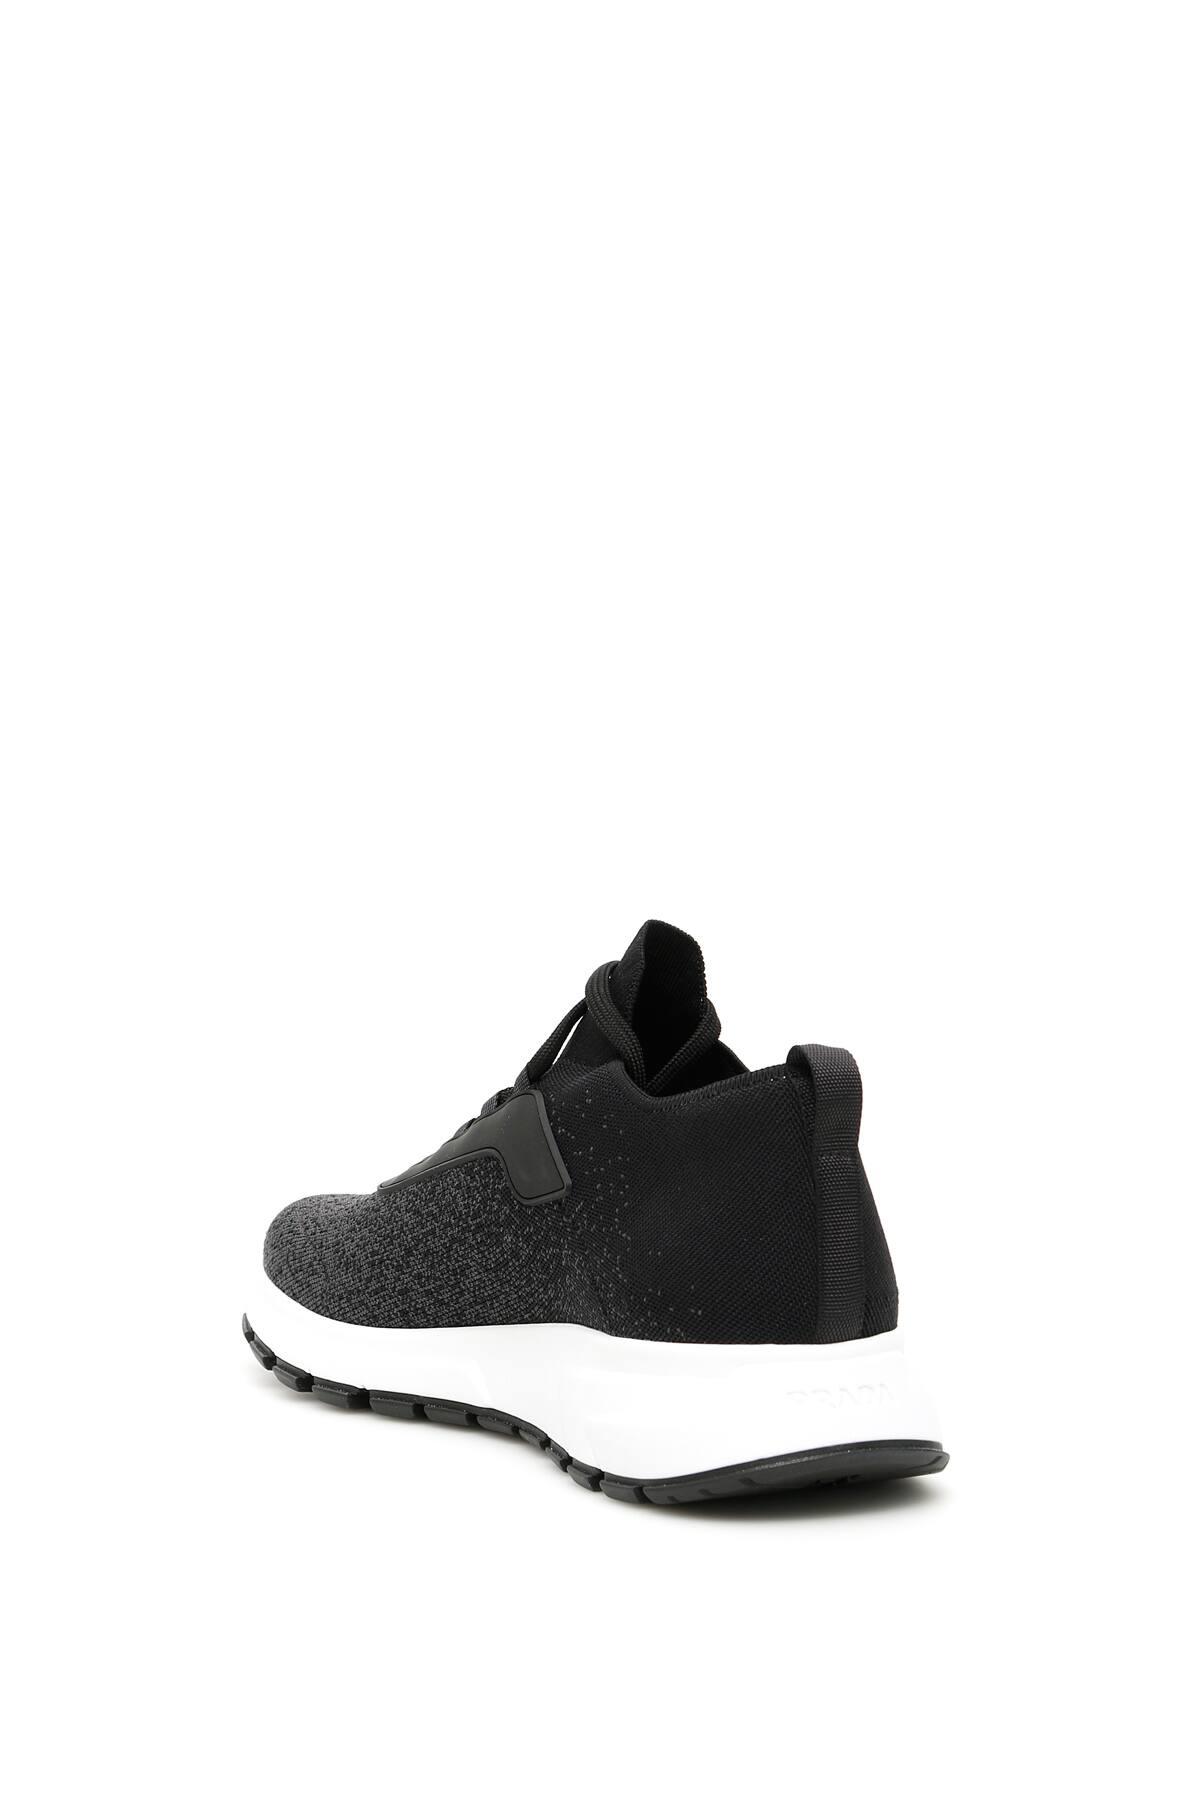 Prada Prax 01 Sneakers in Black for Men | Lyst